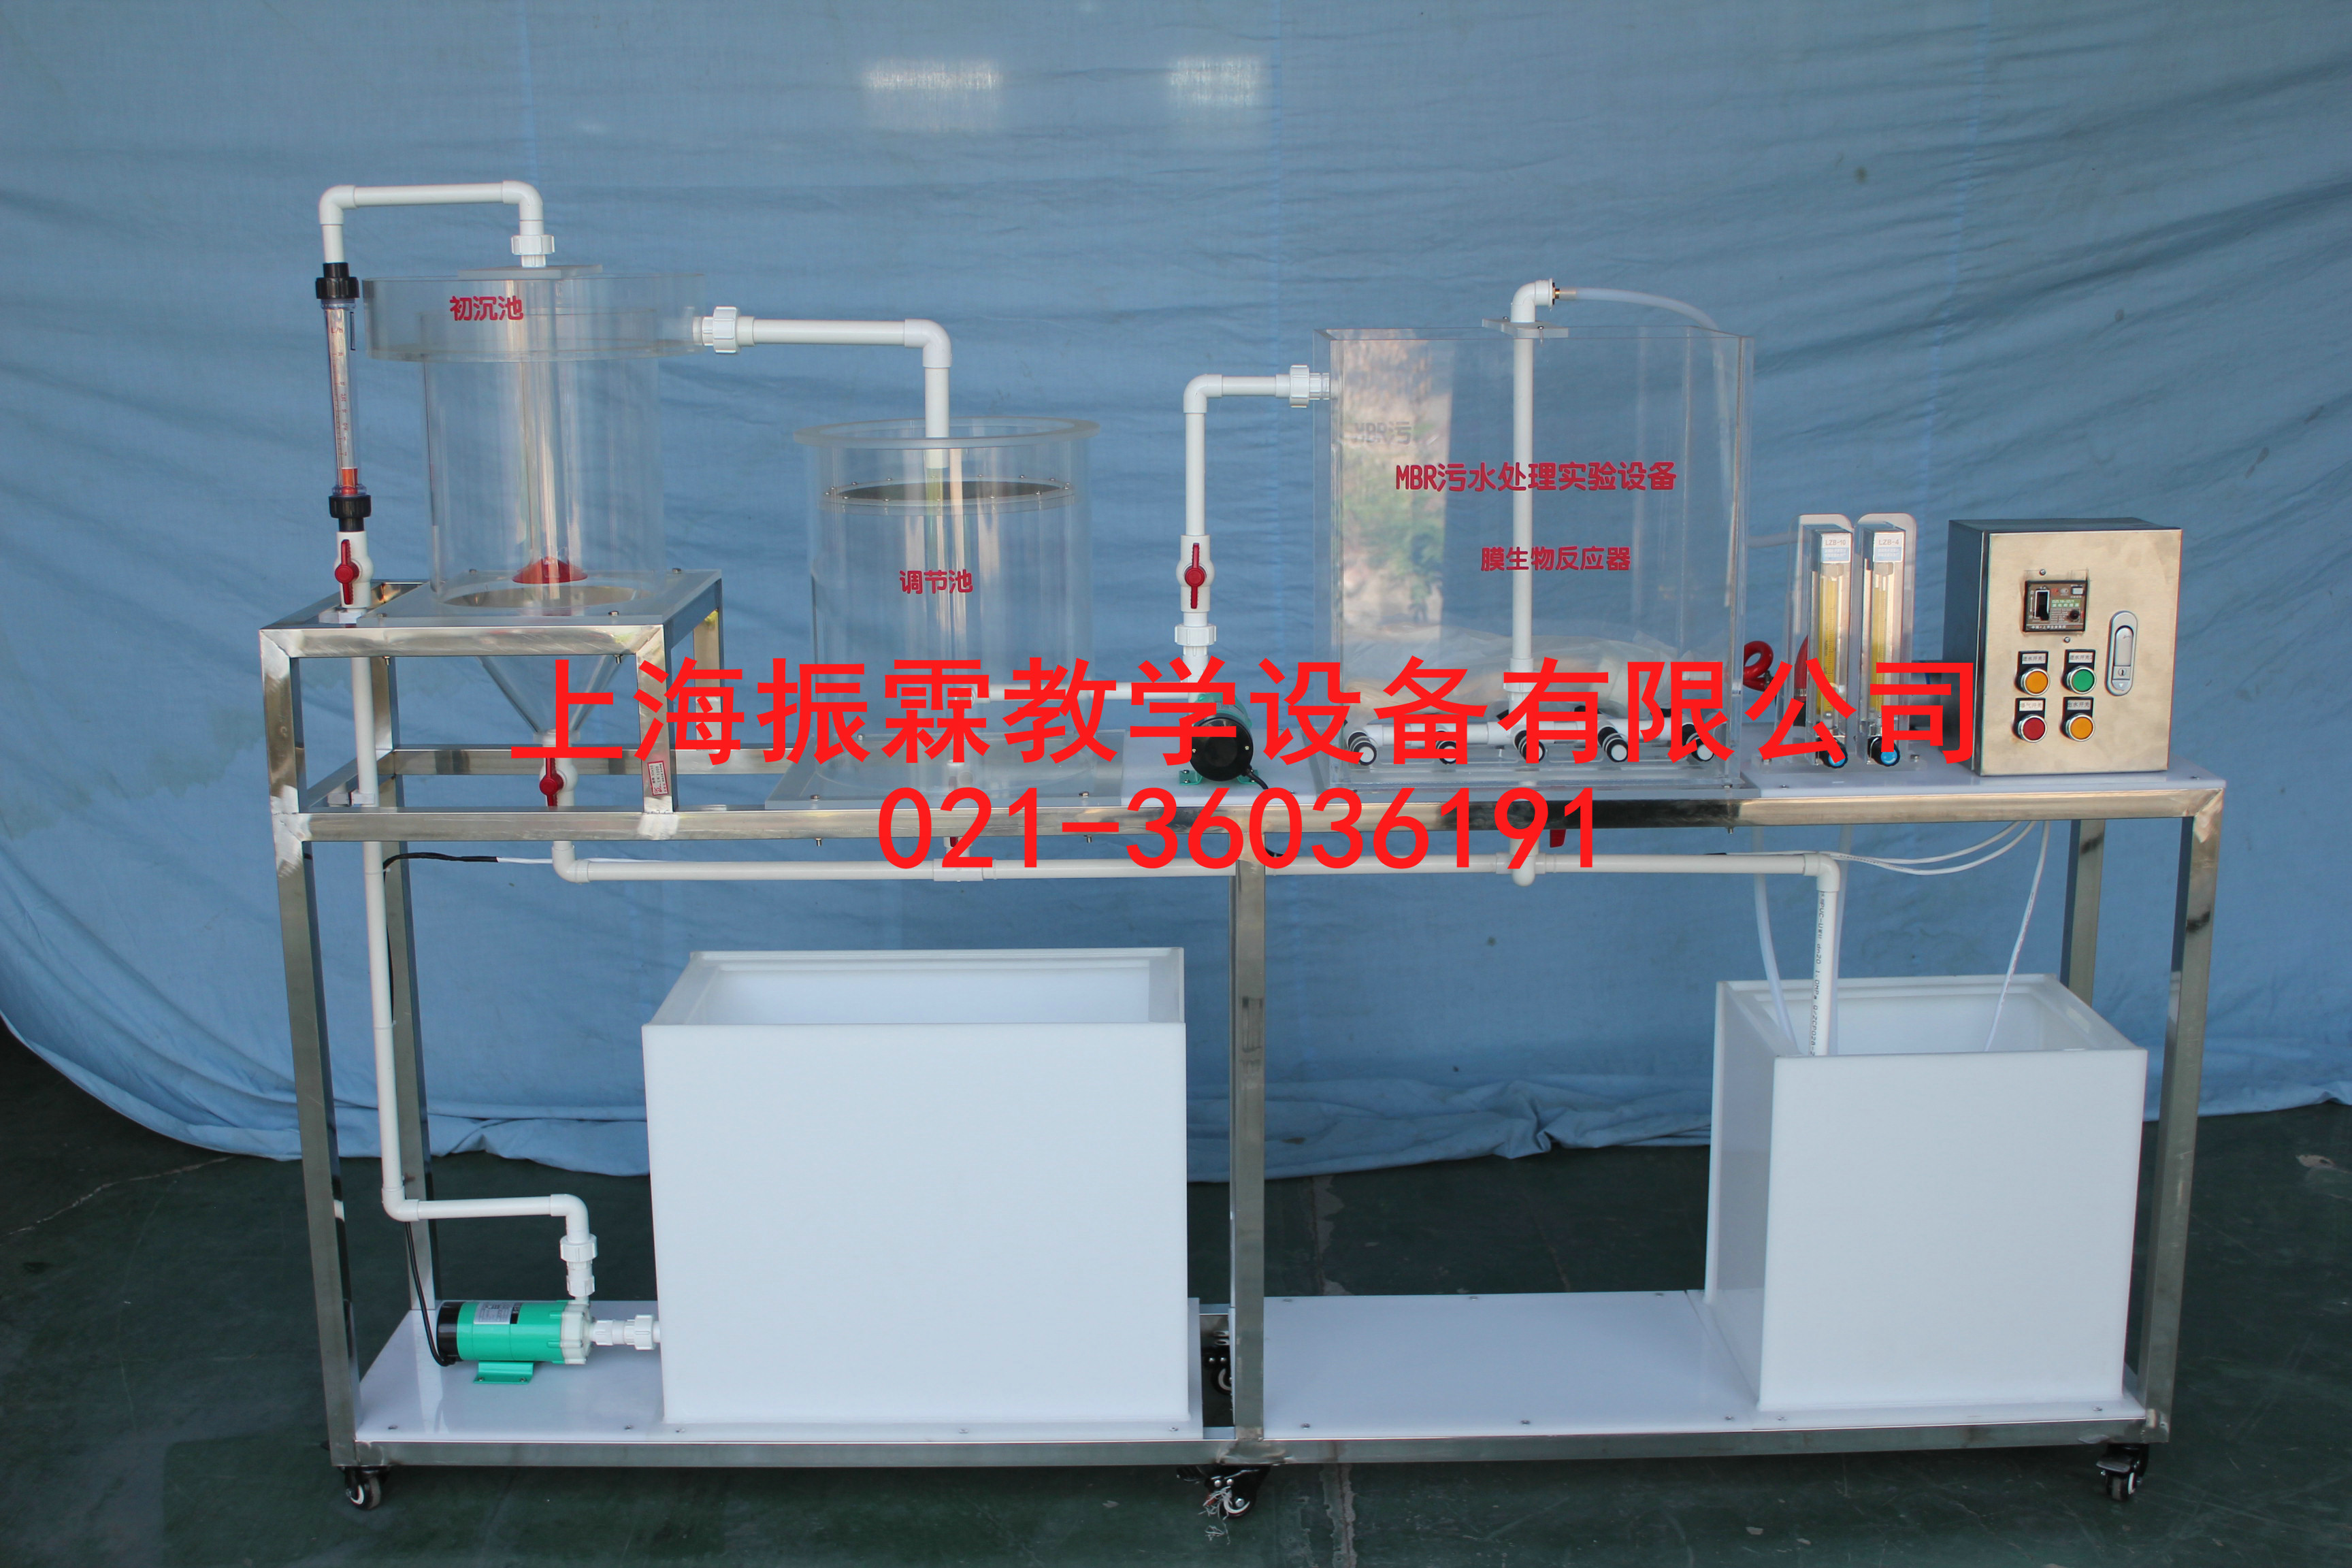 MBR污水处理实验装置,MBR污水处理实训设备,污水处理实验设备--上海振霖公司